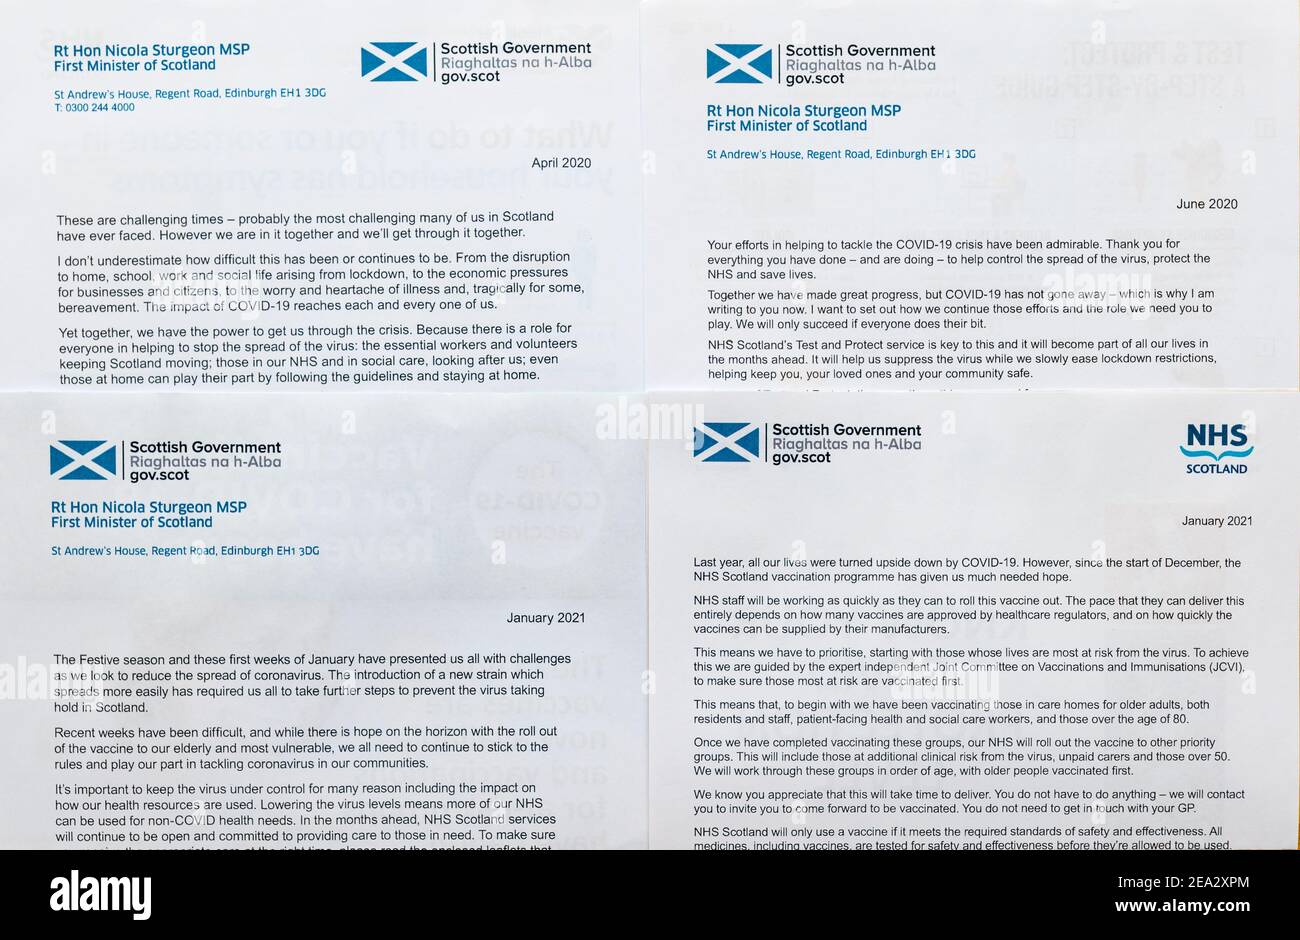 Lettres du gouvernement britannique et écossais du premier ministre Nicola Sturgeon lors de la pandémie du coronavirus Covid-19, Écosse, Royaume-Uni Banque D'Images